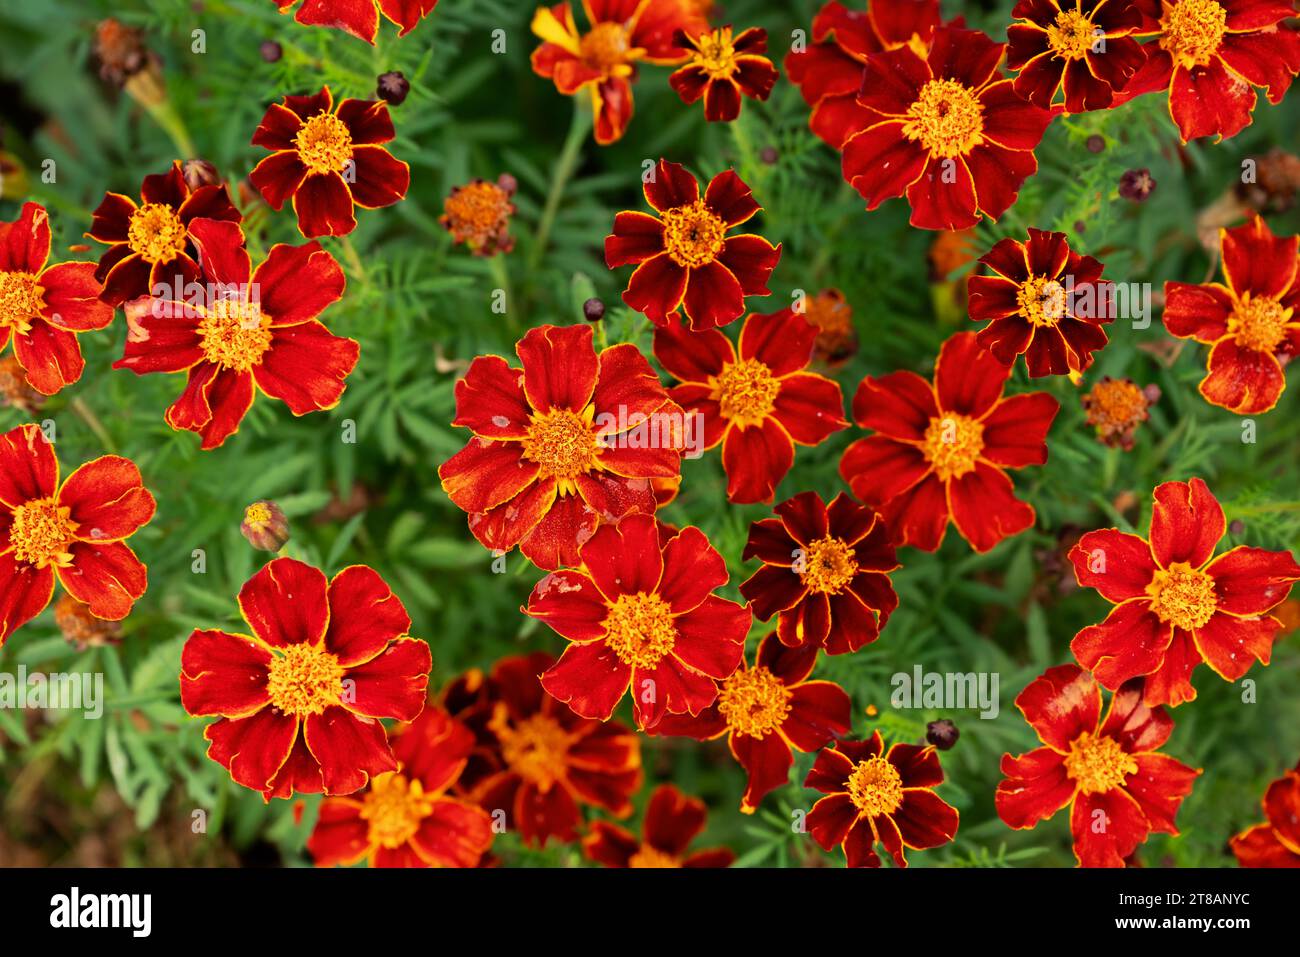 Leuchtend rote Samtblumen heben sich in einem üppig grünen Blumenbeet hervor und schaffen eine malerische und fesselnde Szene, perfekt für Werbung und Produktp Stockfoto